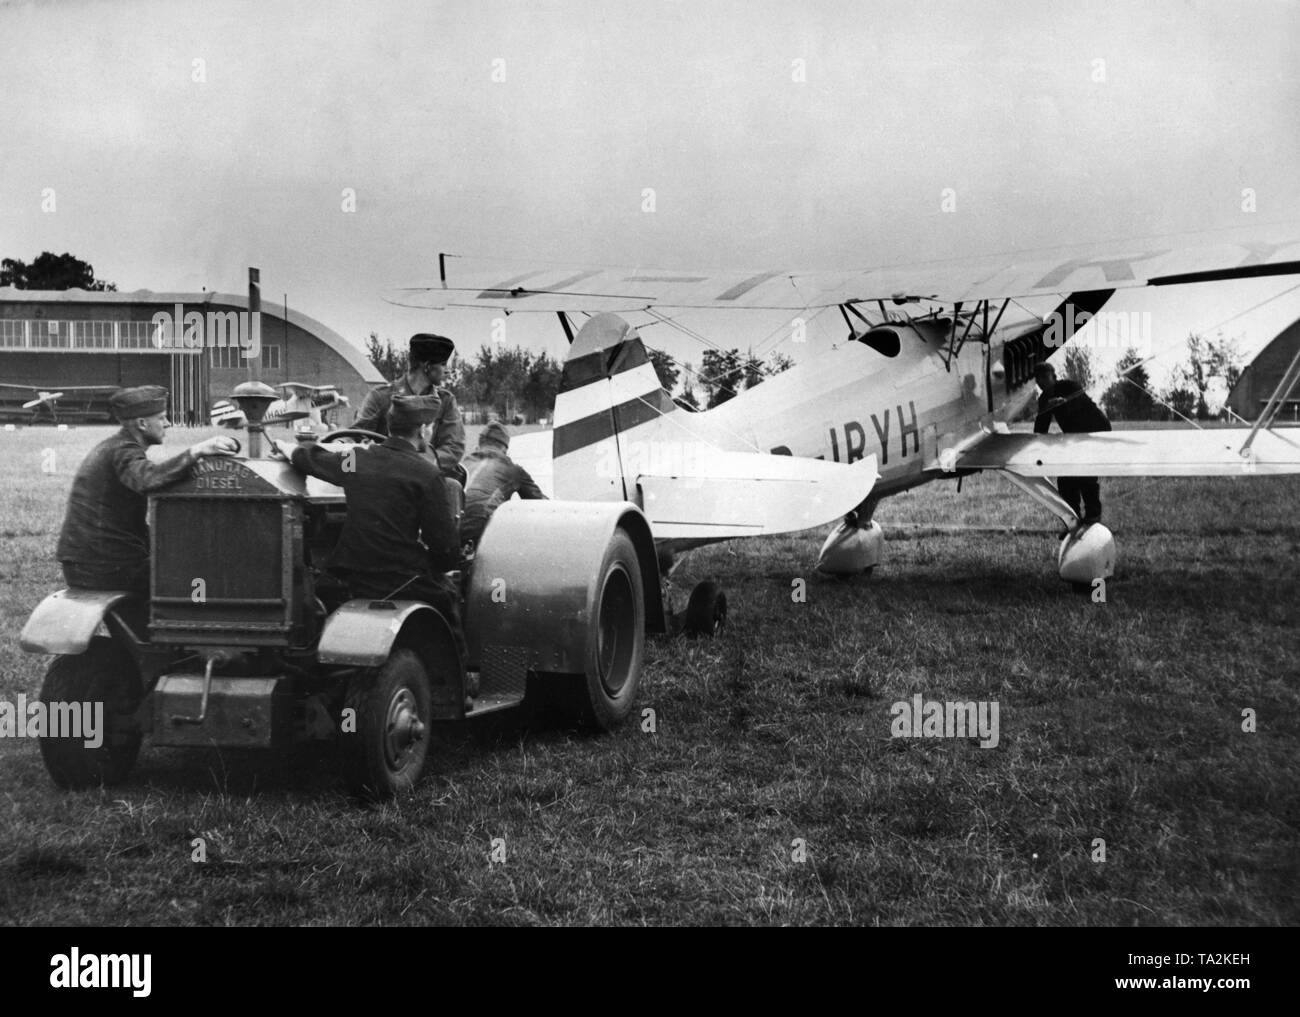 Bodenpersonal der Jagdgeschwader "richthofen" in Doeberitz Einleitung einer Heinkel He 51 Flugzeuge. Die er 51 war zwischen 1934 und 1937 produziert, ab 1936 wurde zum Teil von der Arado Ar 68 ersetzt und ab 1937 intensiv von der Messerschmitt Bf 109 als Standard Kampfflugzeuge ersetzt. Das Bild ist aus der Serie: "Ein Tag am Jagdgeschwader Richthofen'. Zu dieser Zeit ist das fliegergeschwader Doeberitz erhielt die Auszeichnung 'Richthofen', erhielt aber der endgültige Name JG 2 "richthofen" nur auf 1.5.1939, unter dem er später im Zweiten Weltkrieg beteiligt. Stockfoto